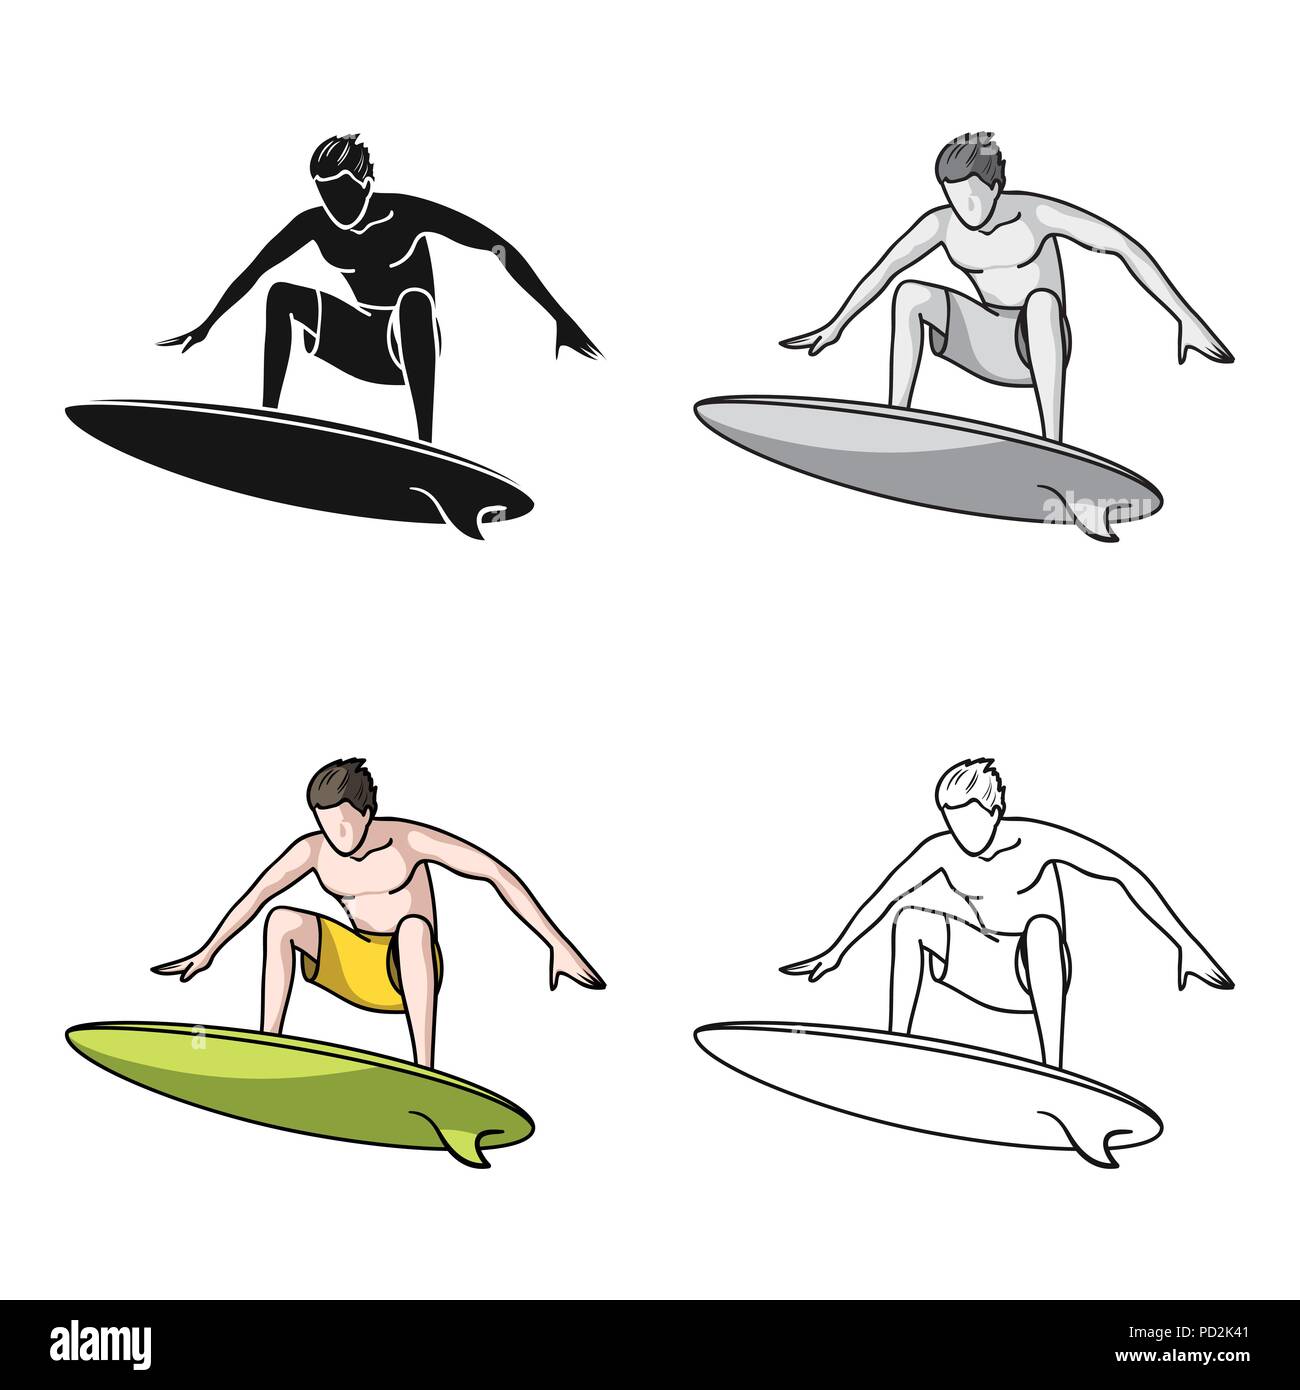 Surfer En Action Dans L Icone Design Dessin Anime Isole Sur Fond Blanc Symbole D Illustration Vectorielle Stock Surf Image Vectorielle Stock Alamy